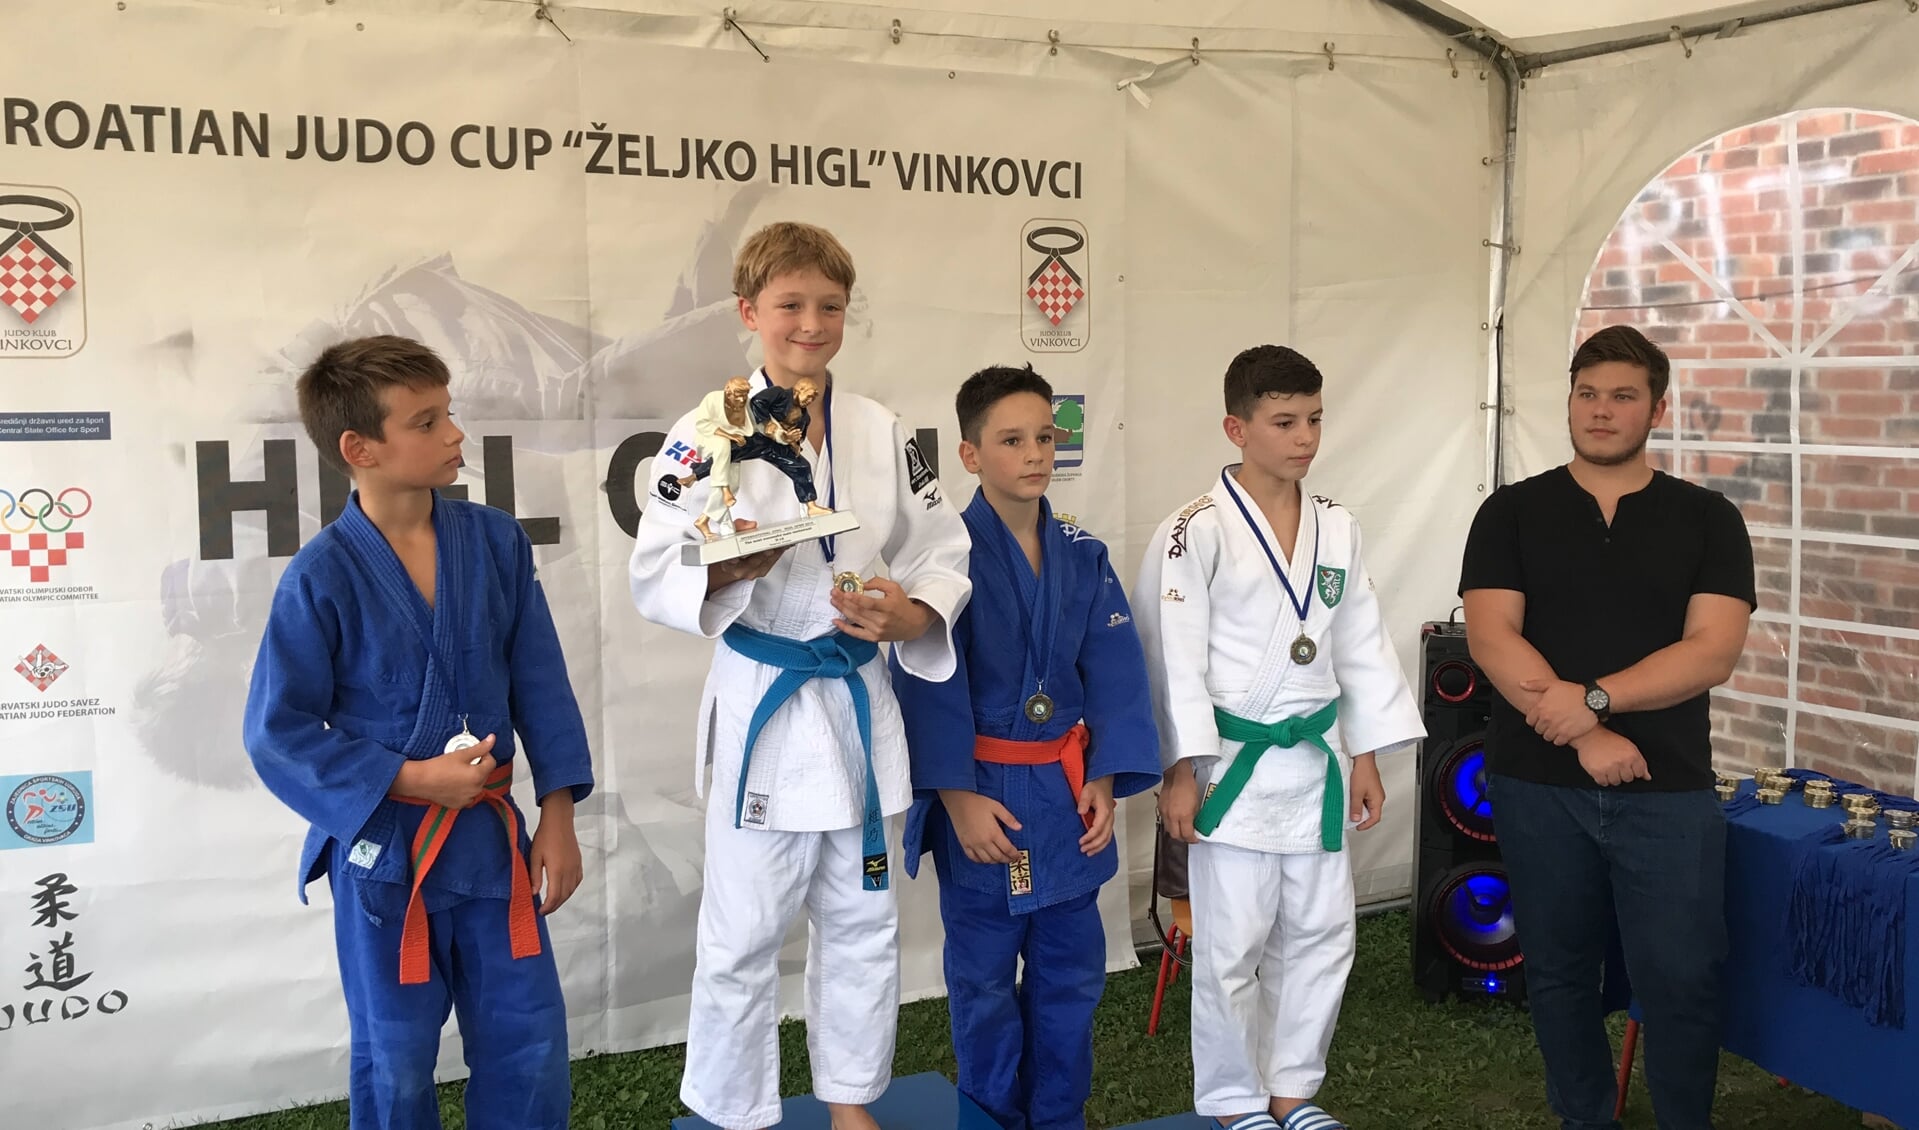 Judoka Inno Loeber wint in Vinkovci 